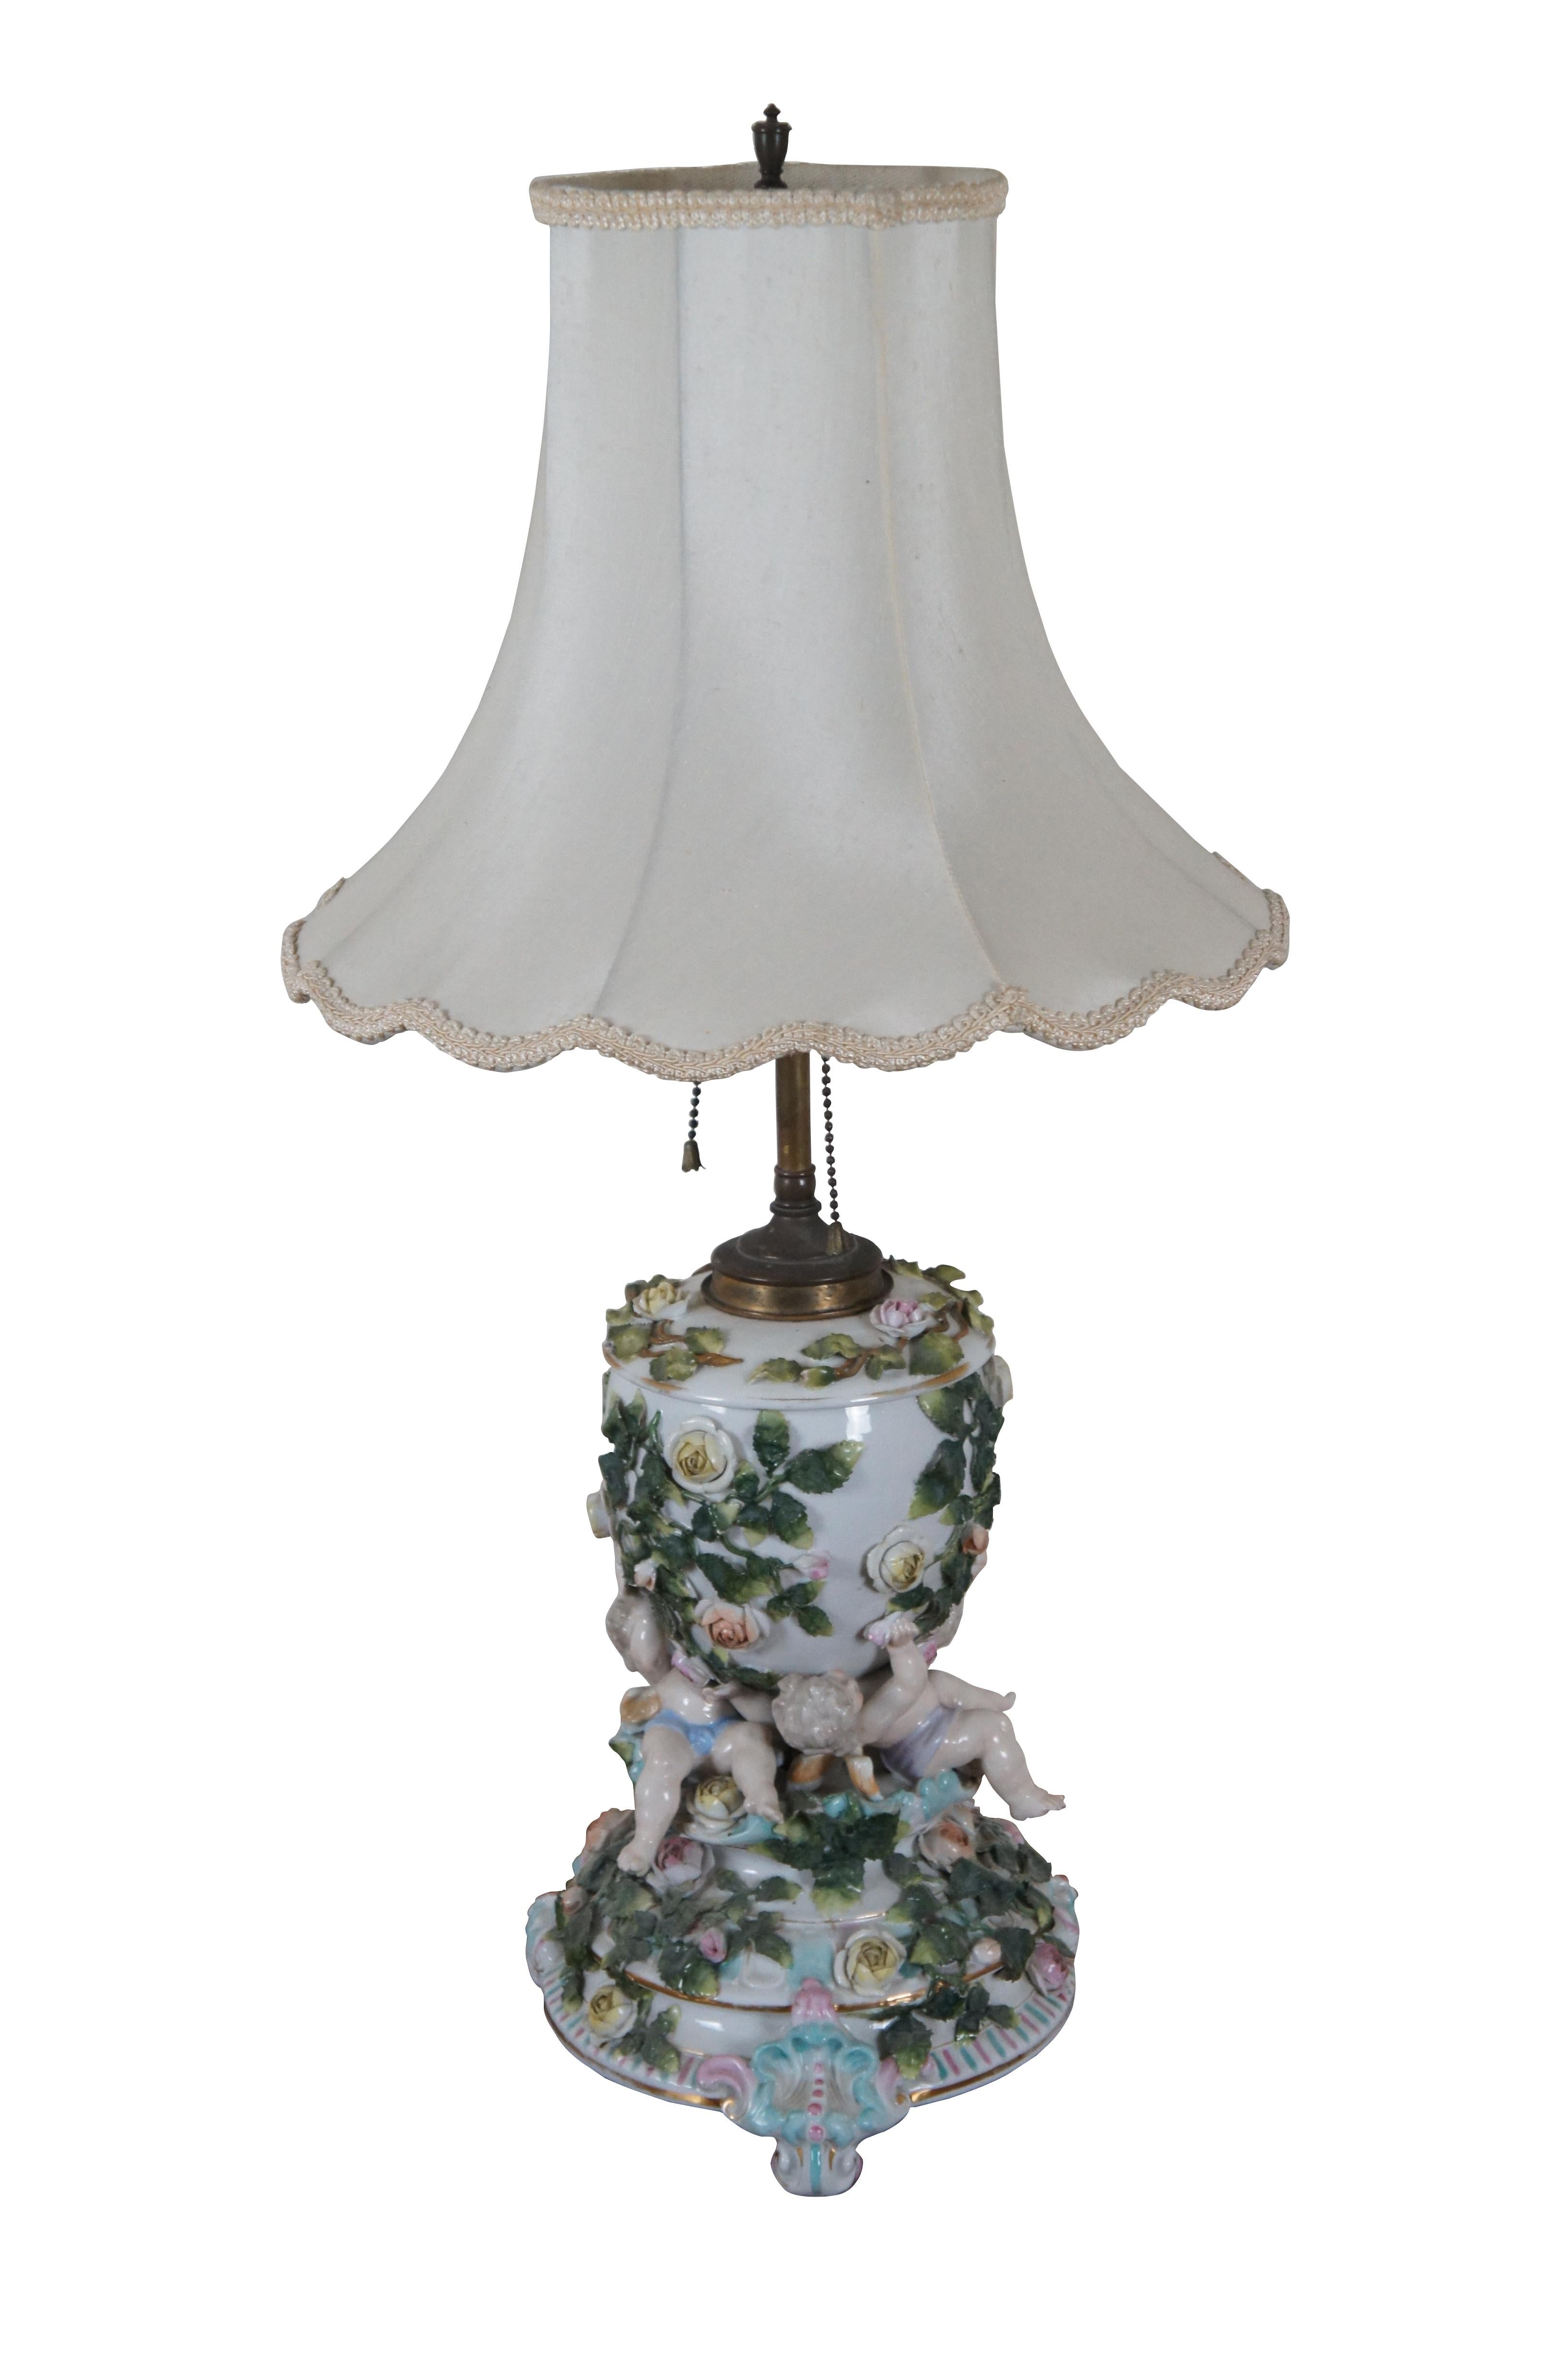 Ancienne urne à trophée de cheminée convertie en lampe à huile de Sitzendorf Dresde, présentant un motif de roses grimpantes et de chérubins couchés. Marqué sur la base avec des lignes croisées, circa 1884 - 1902. Comprend un abat-jour rond blanc à